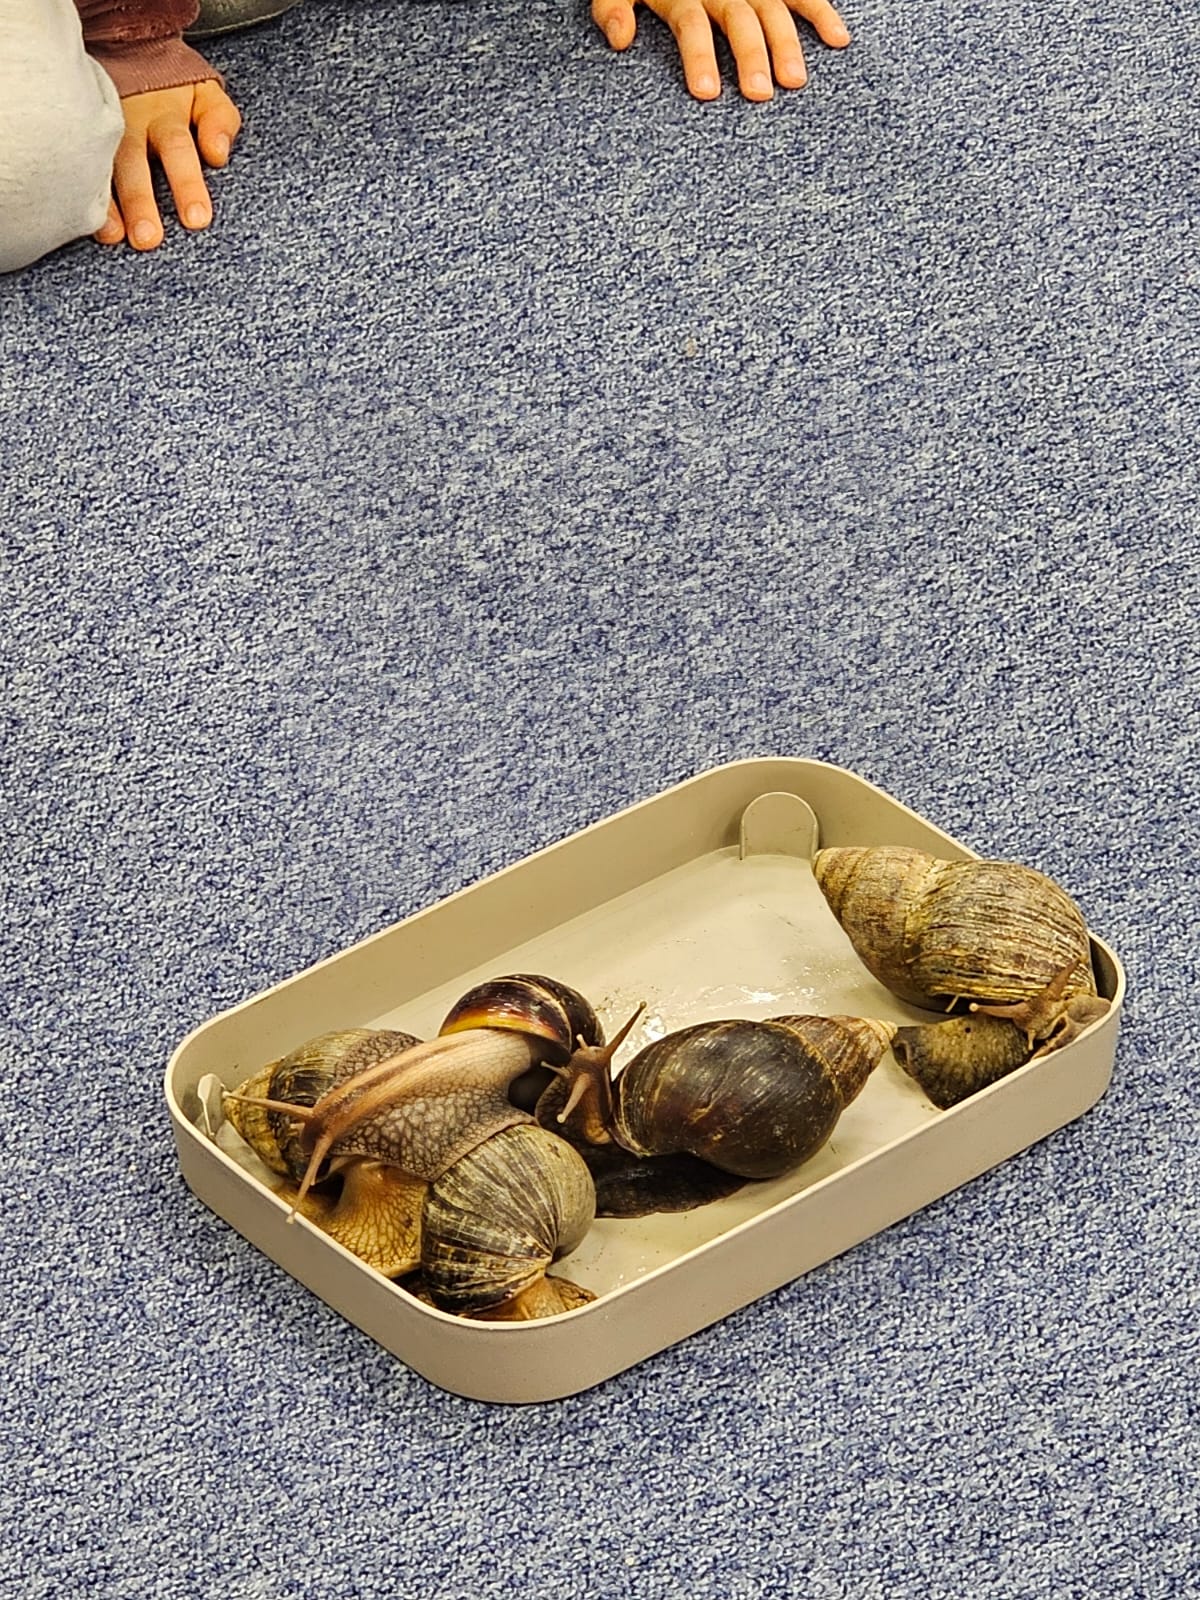 Warsztaty - poznaj ślimaka i żółwia